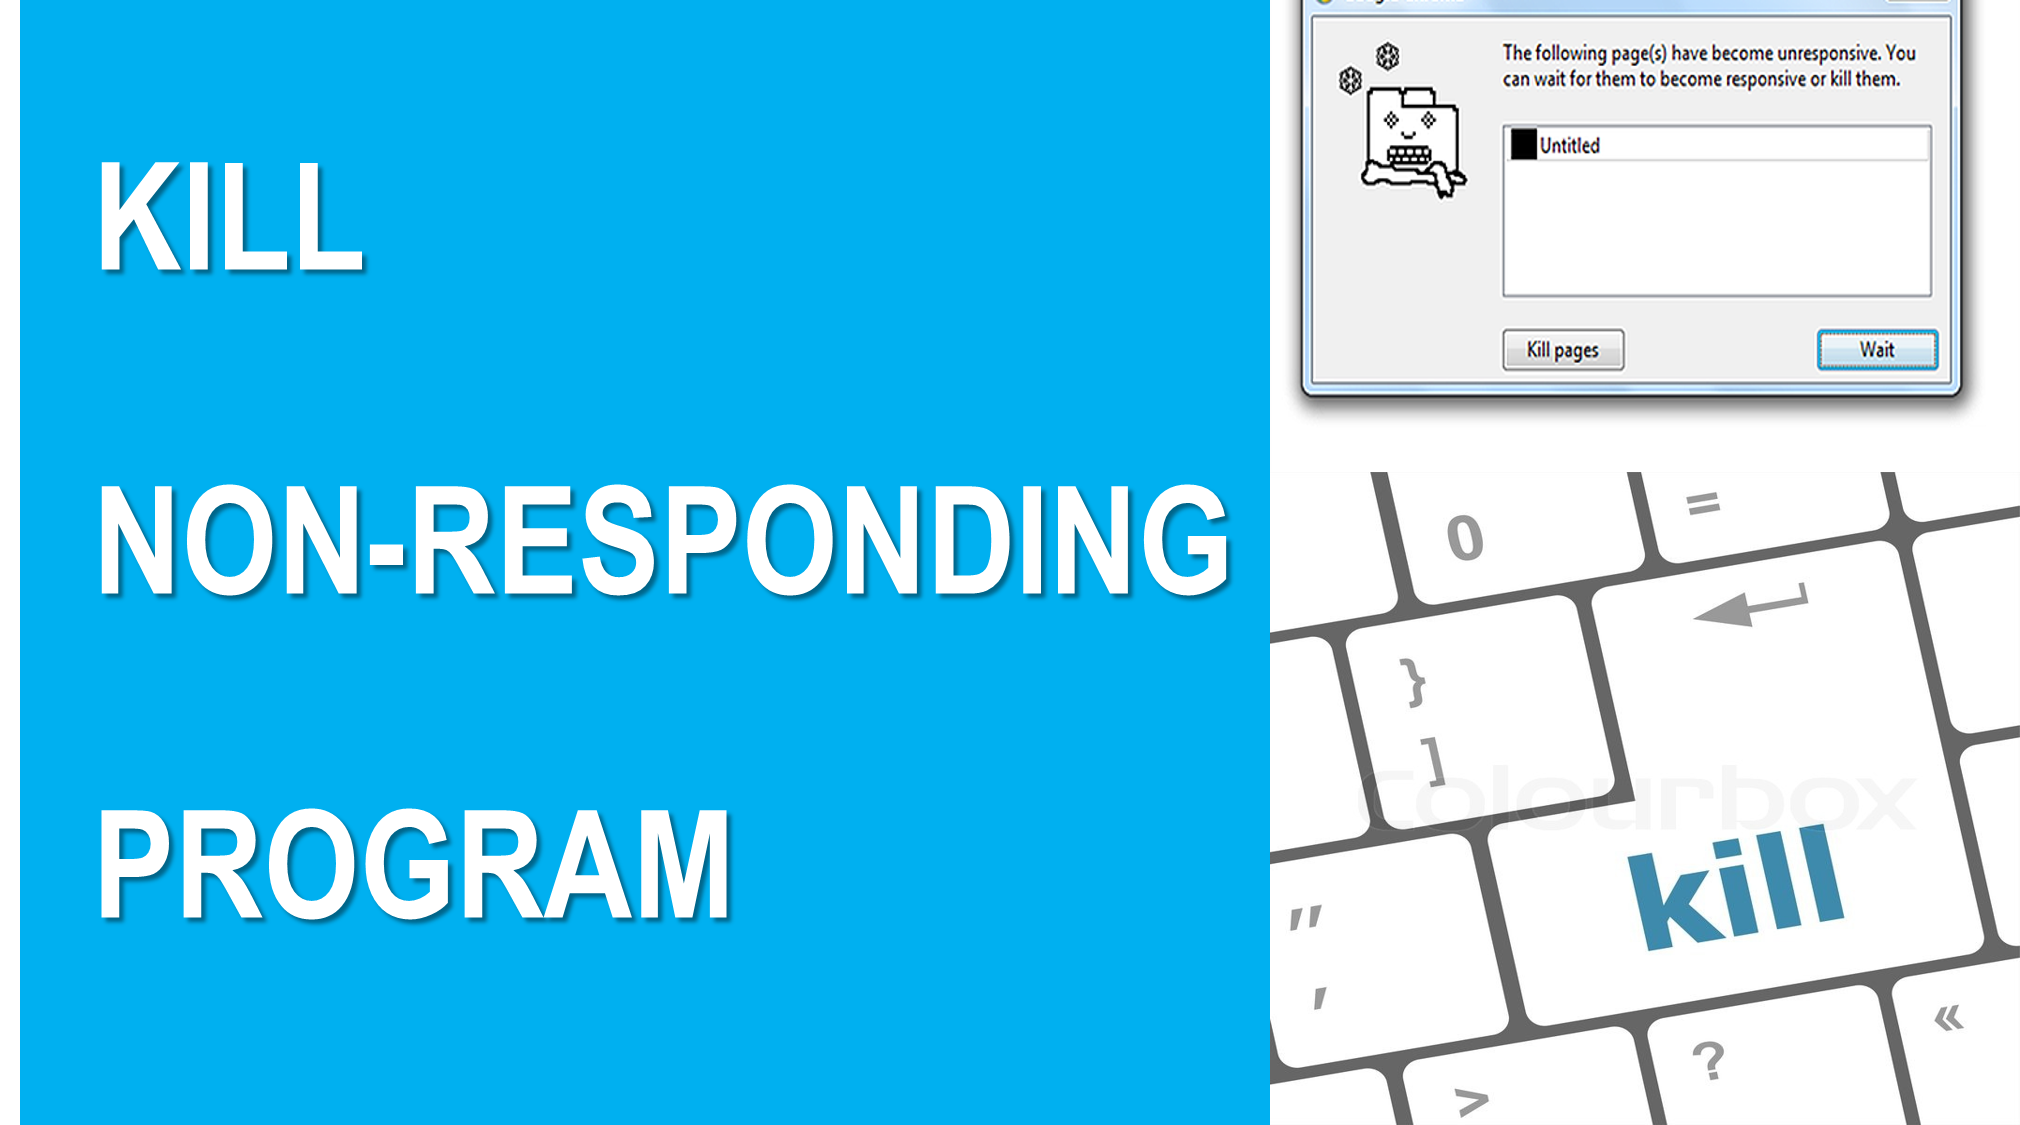 Not-responding-program